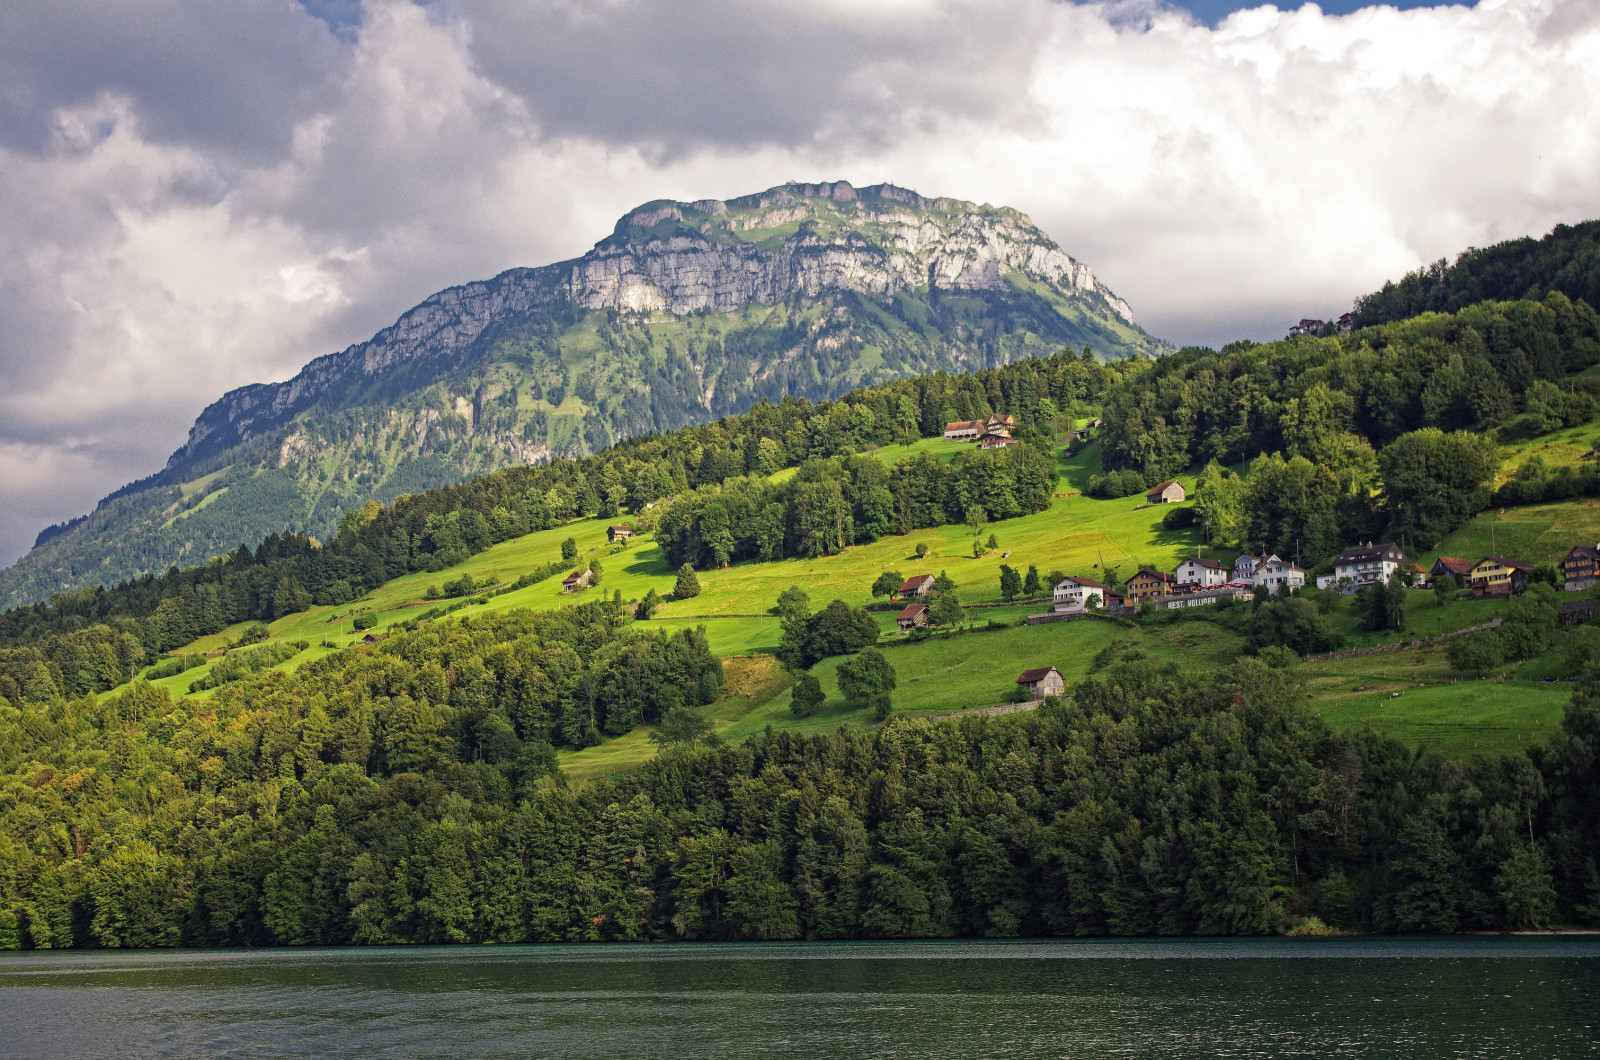 ประเทศสวิสเซอร์แลนด์, ทะเลสาป, ต้นไม้, ผักใบเขียว, ภูเขา, บ้าน, ลาด, ทะเลสาบลูเซิร์น